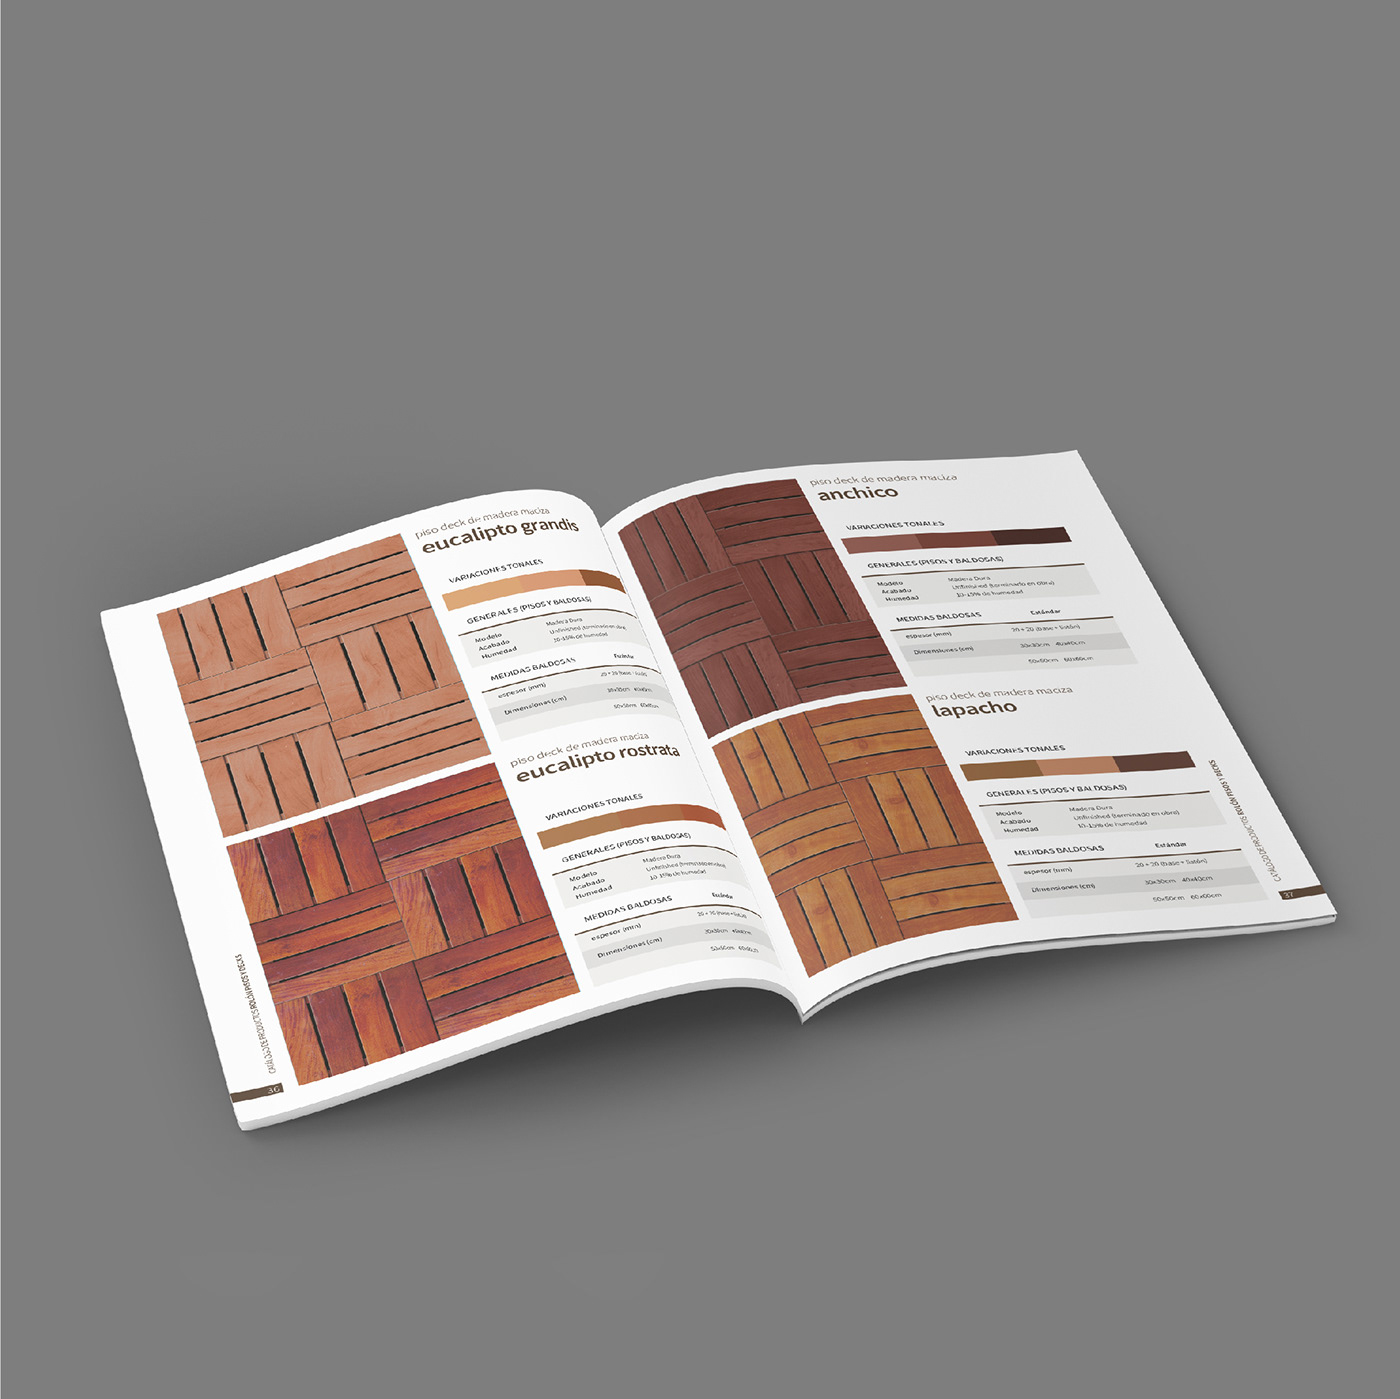 catalog diseño diseño gráfico editorial editorial design 